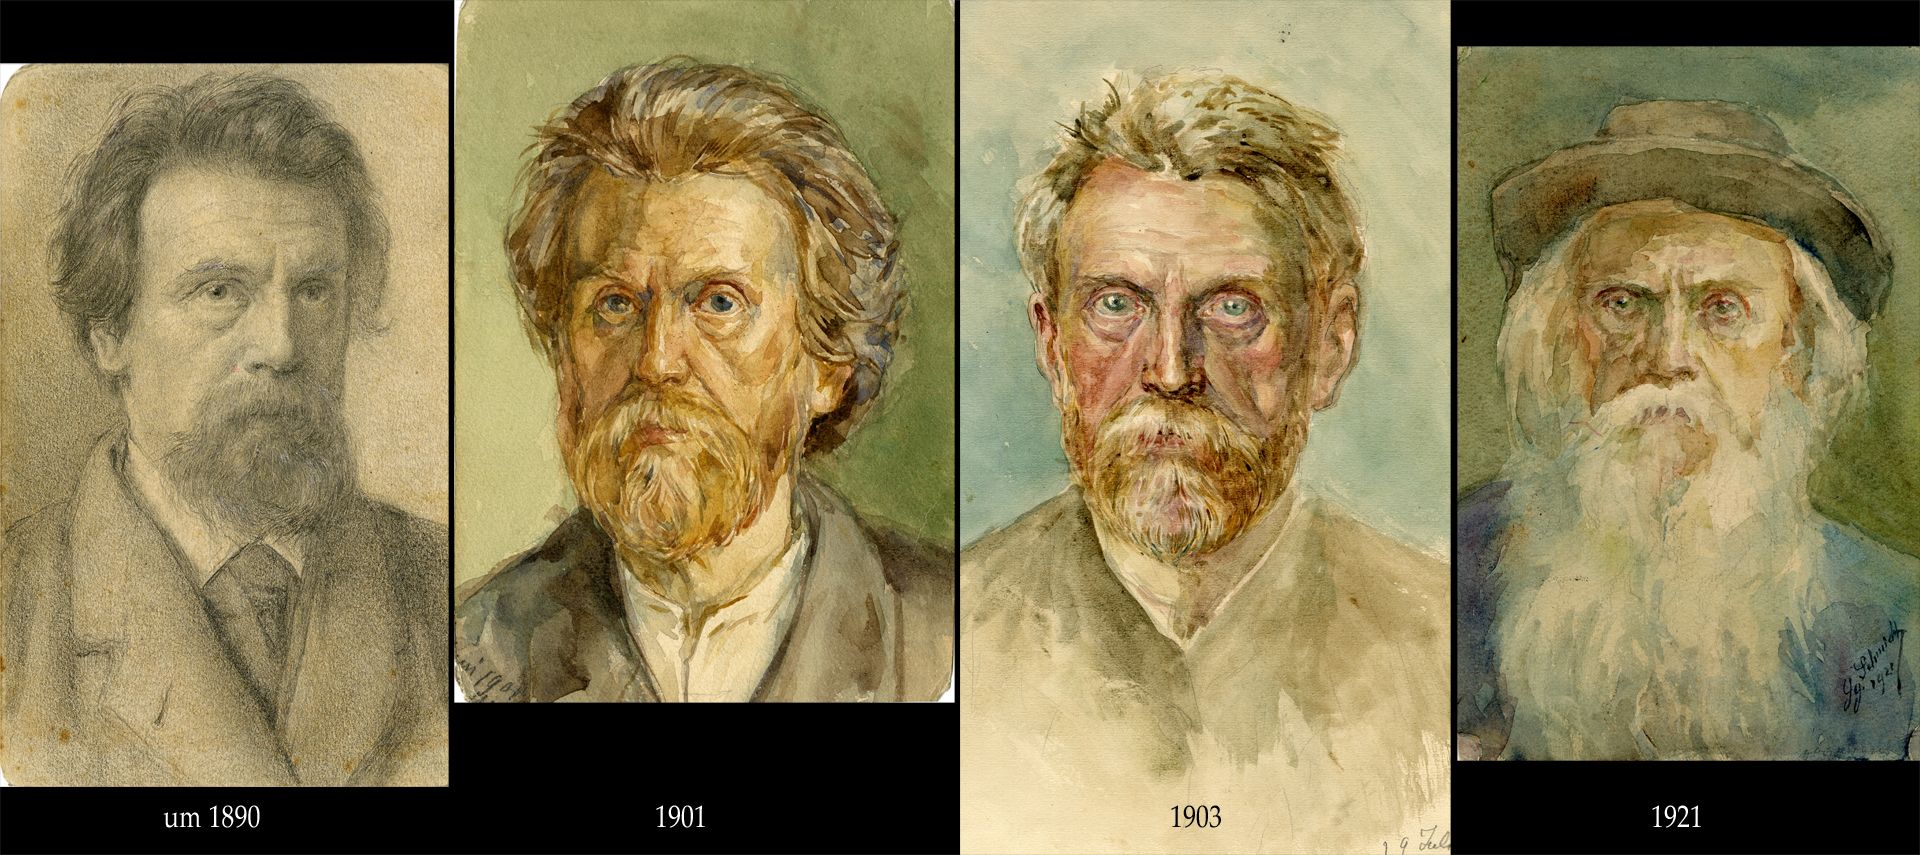 Selfportrait Portraits for comparison